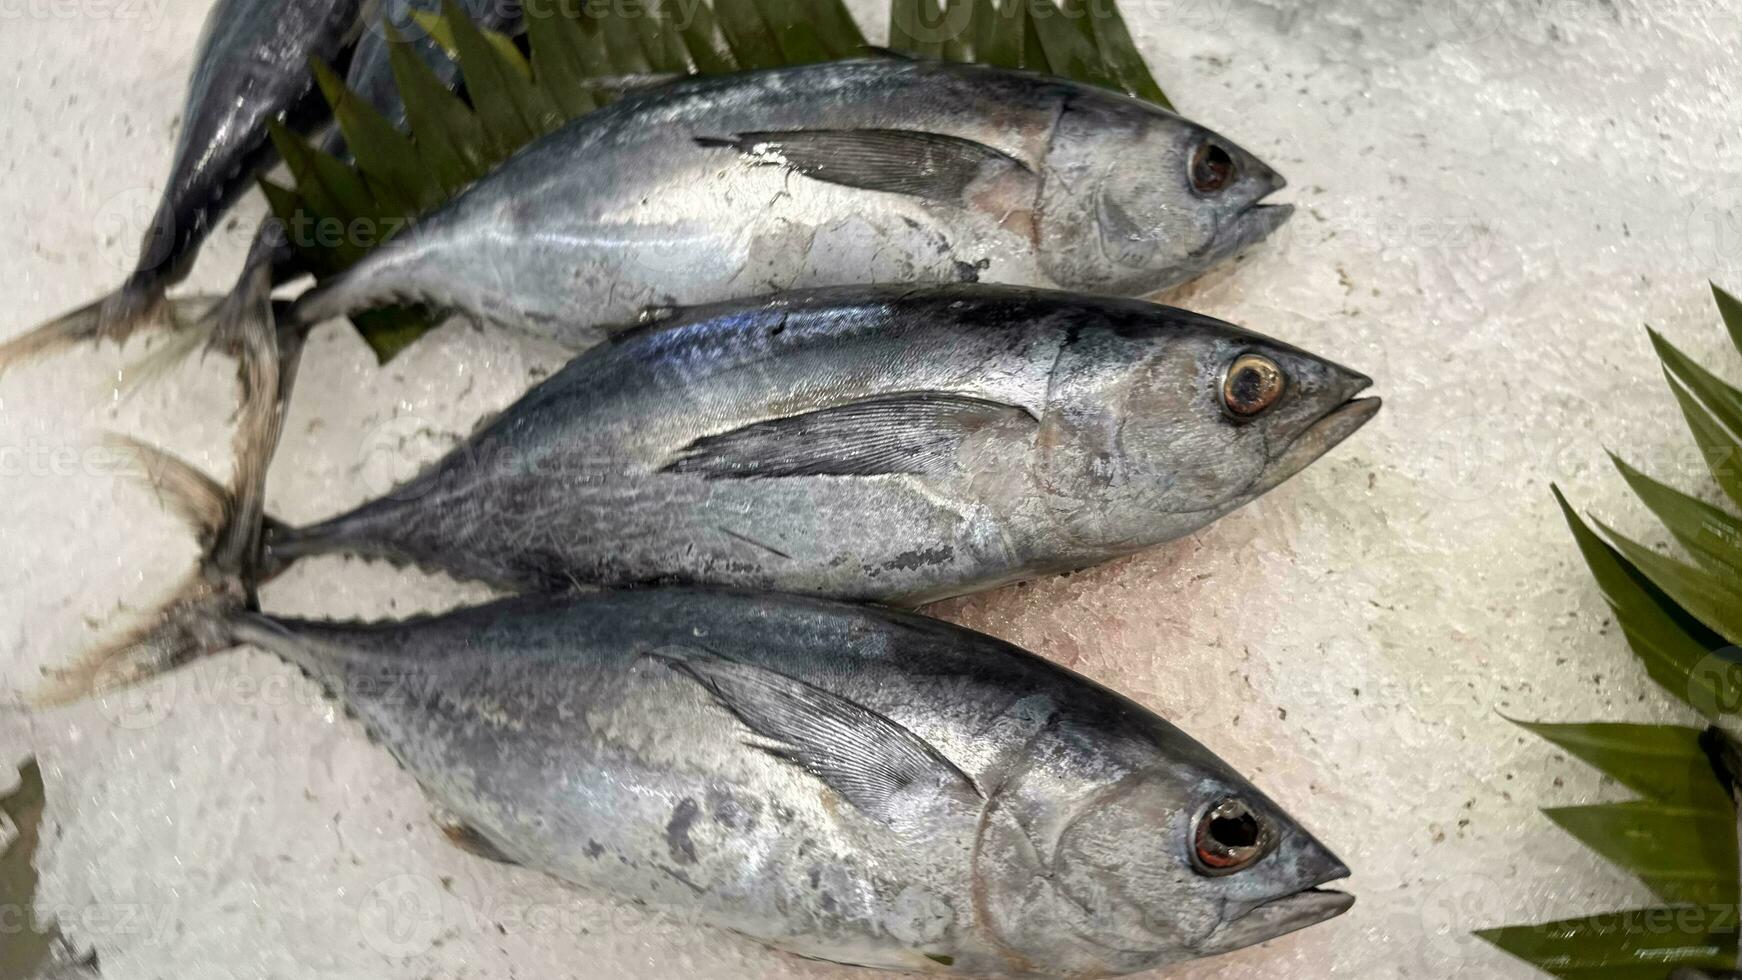 Tuna Mackerel fish fresh in the ice, local produce fish, japanese katsuo fish, or bonito tuna or cakalang or tongkol photo